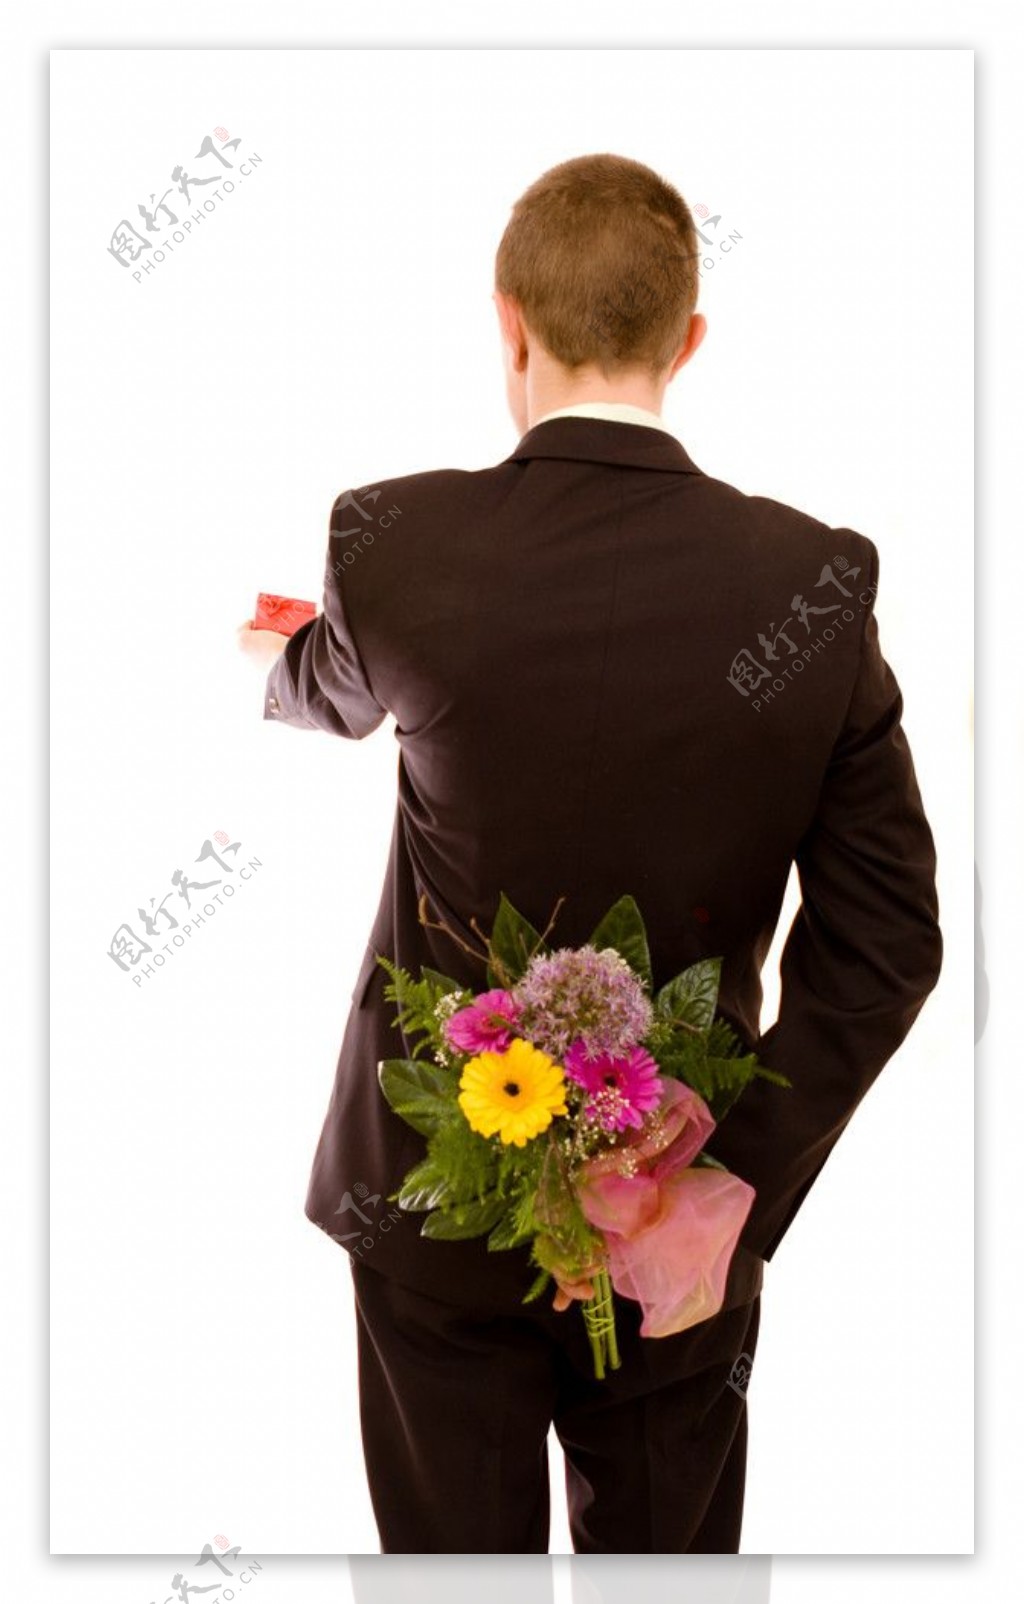 鲜花藏在身后给礼盒的帅哥图片